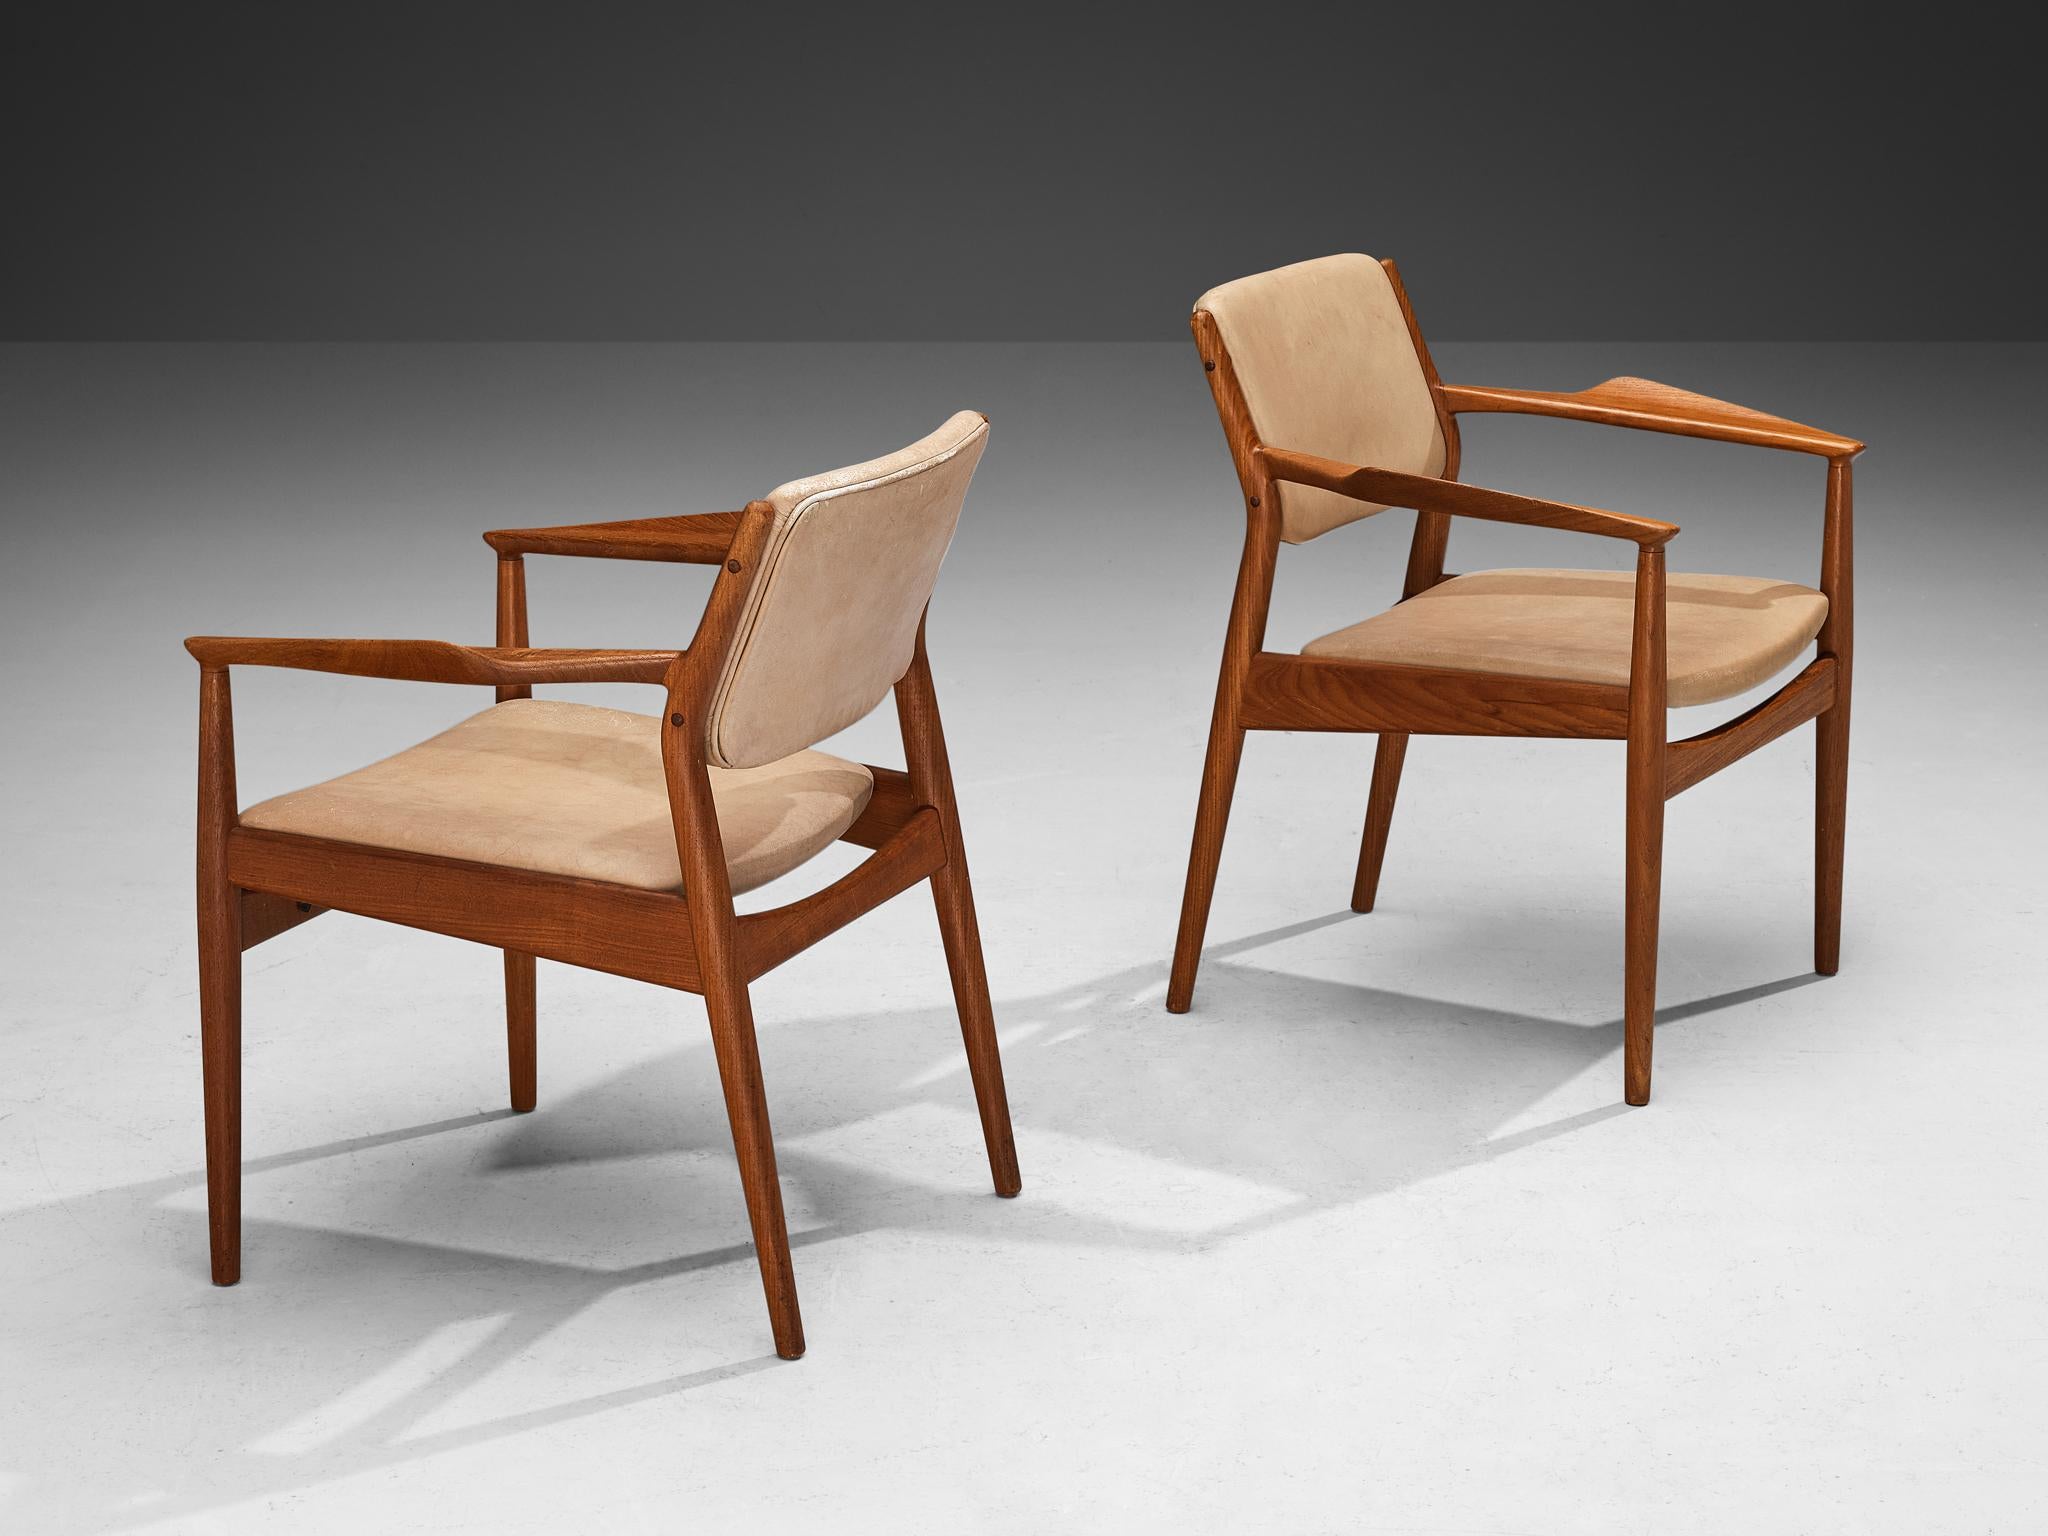 Arne Vodder für Sibast, Paar Sessel, Dänemark, 1960er Jahre

Ein Entwurf von Arne Vodder aus den 1960er Jahren, der in Dänemark hergestellt wird. Der Stuhl verkörpert eine schlichte und zurückhaltende Ästhetik, die sich durch sanft geschwungene